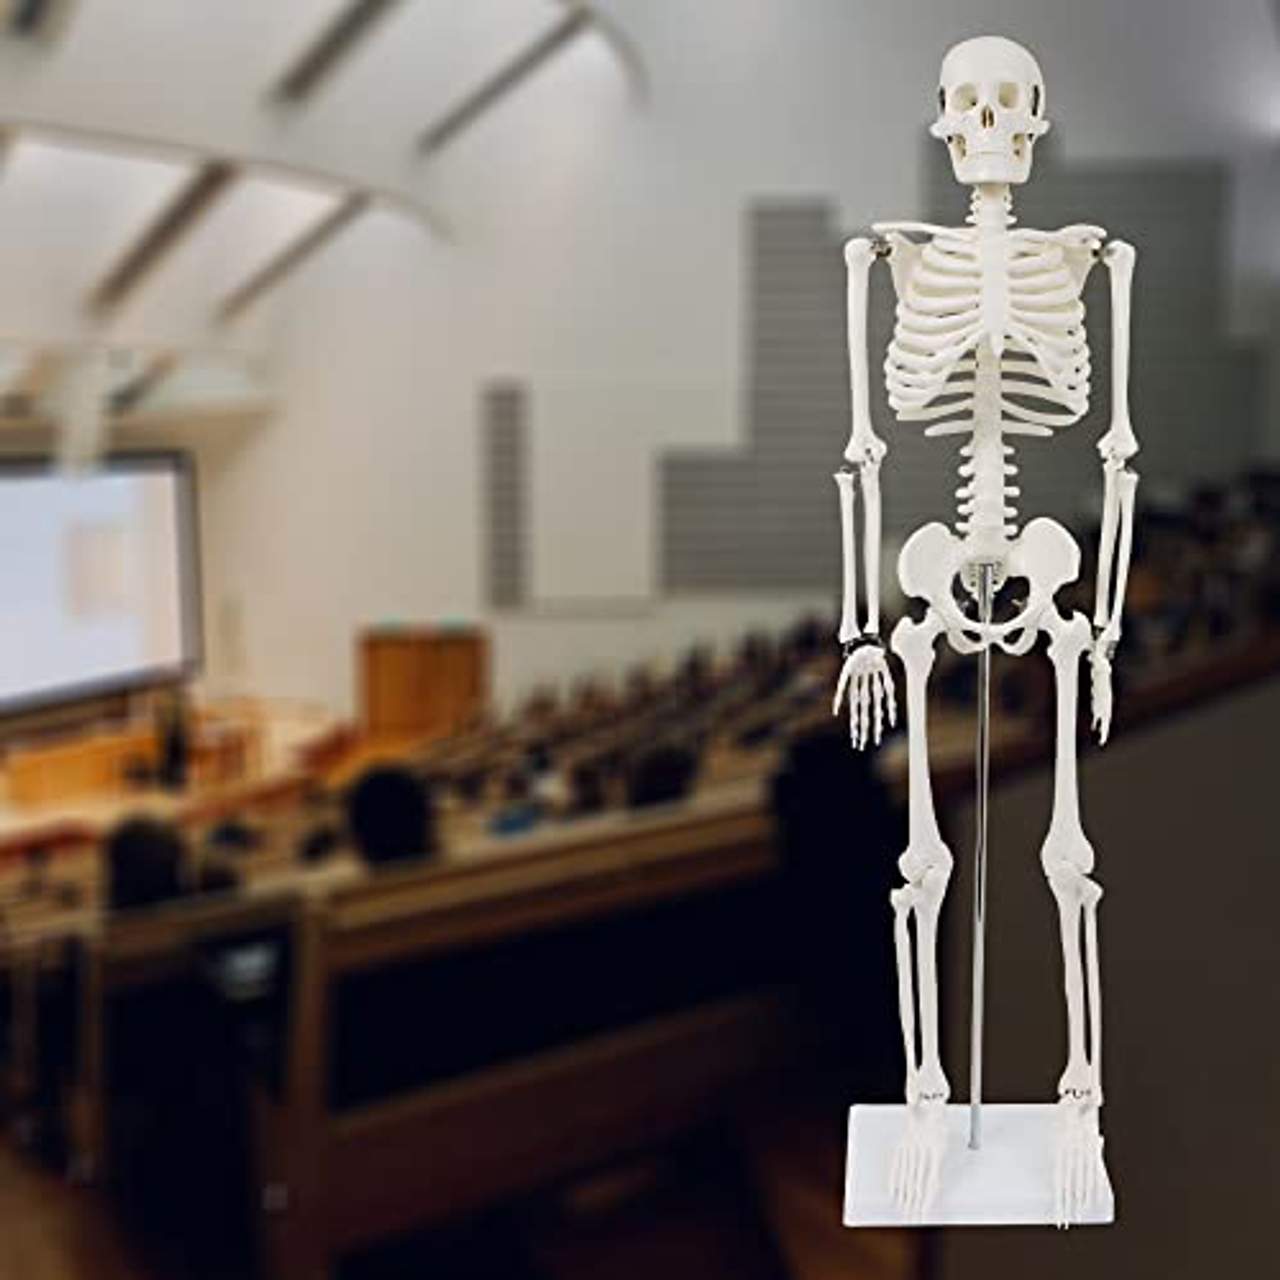 Menschliches Skelett 87cm Lernmodell